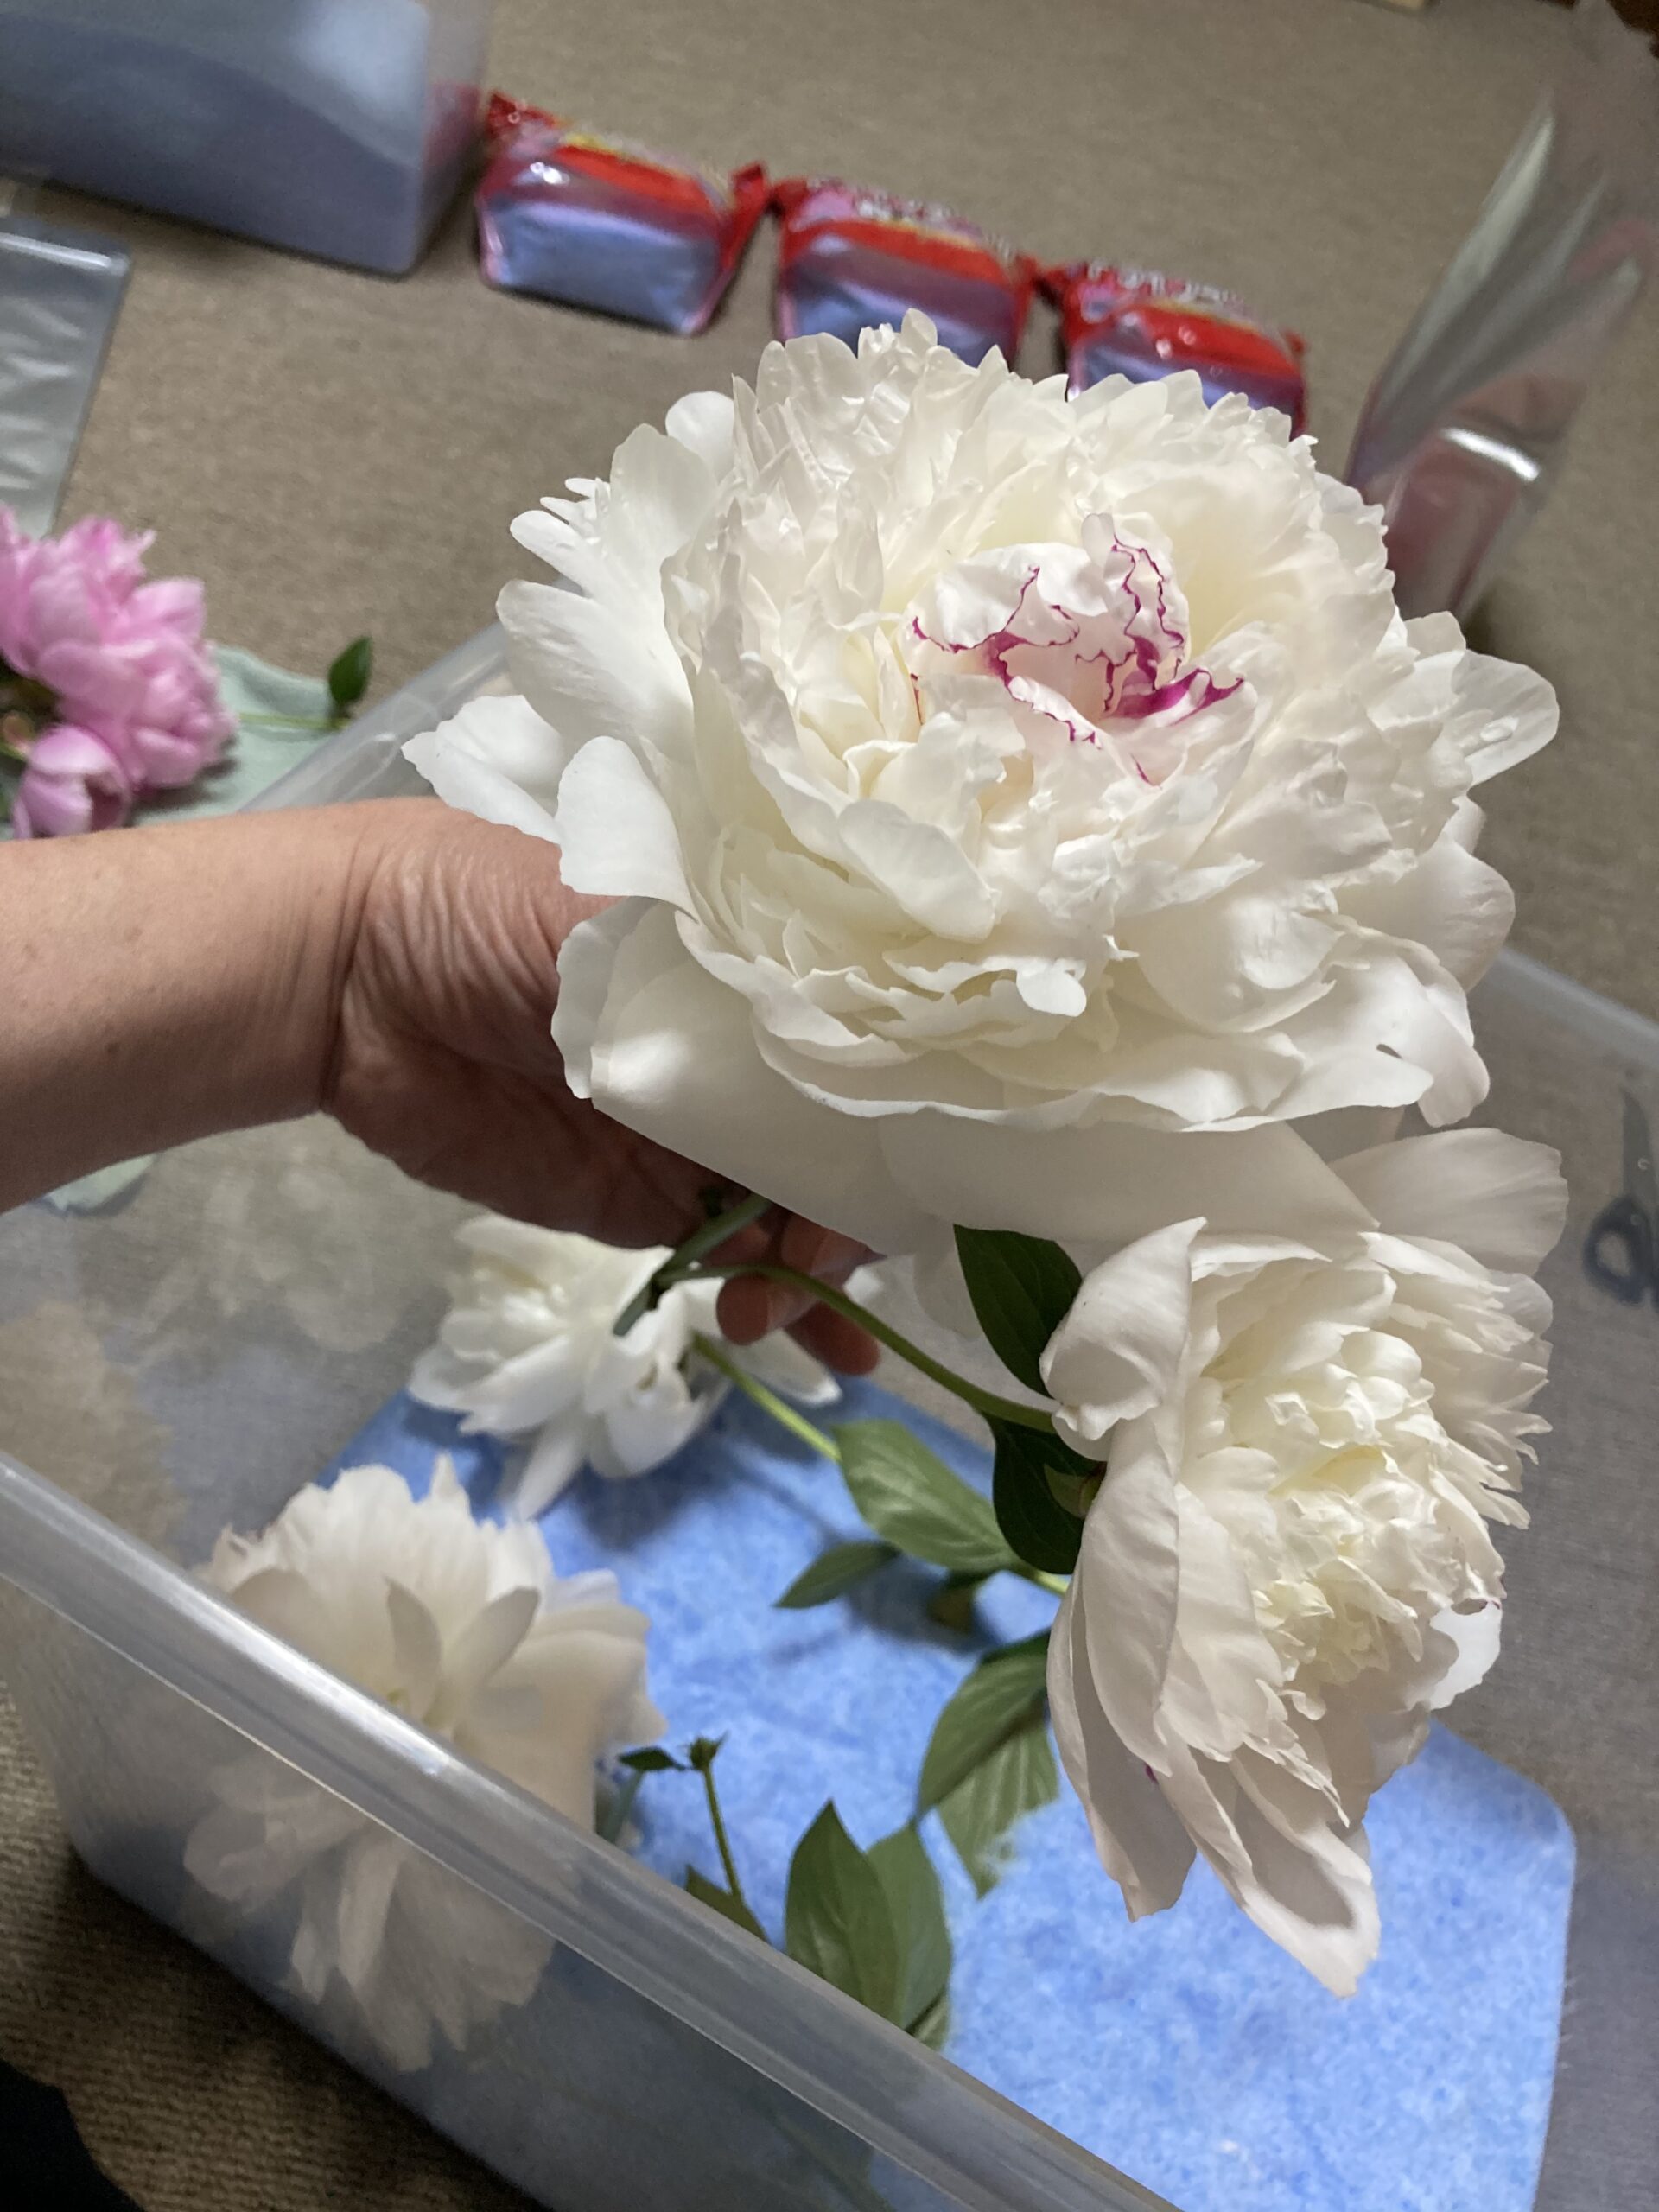 シャクヤクの花をシリカゲルを敷き詰めた密閉ケースに入れる写真
